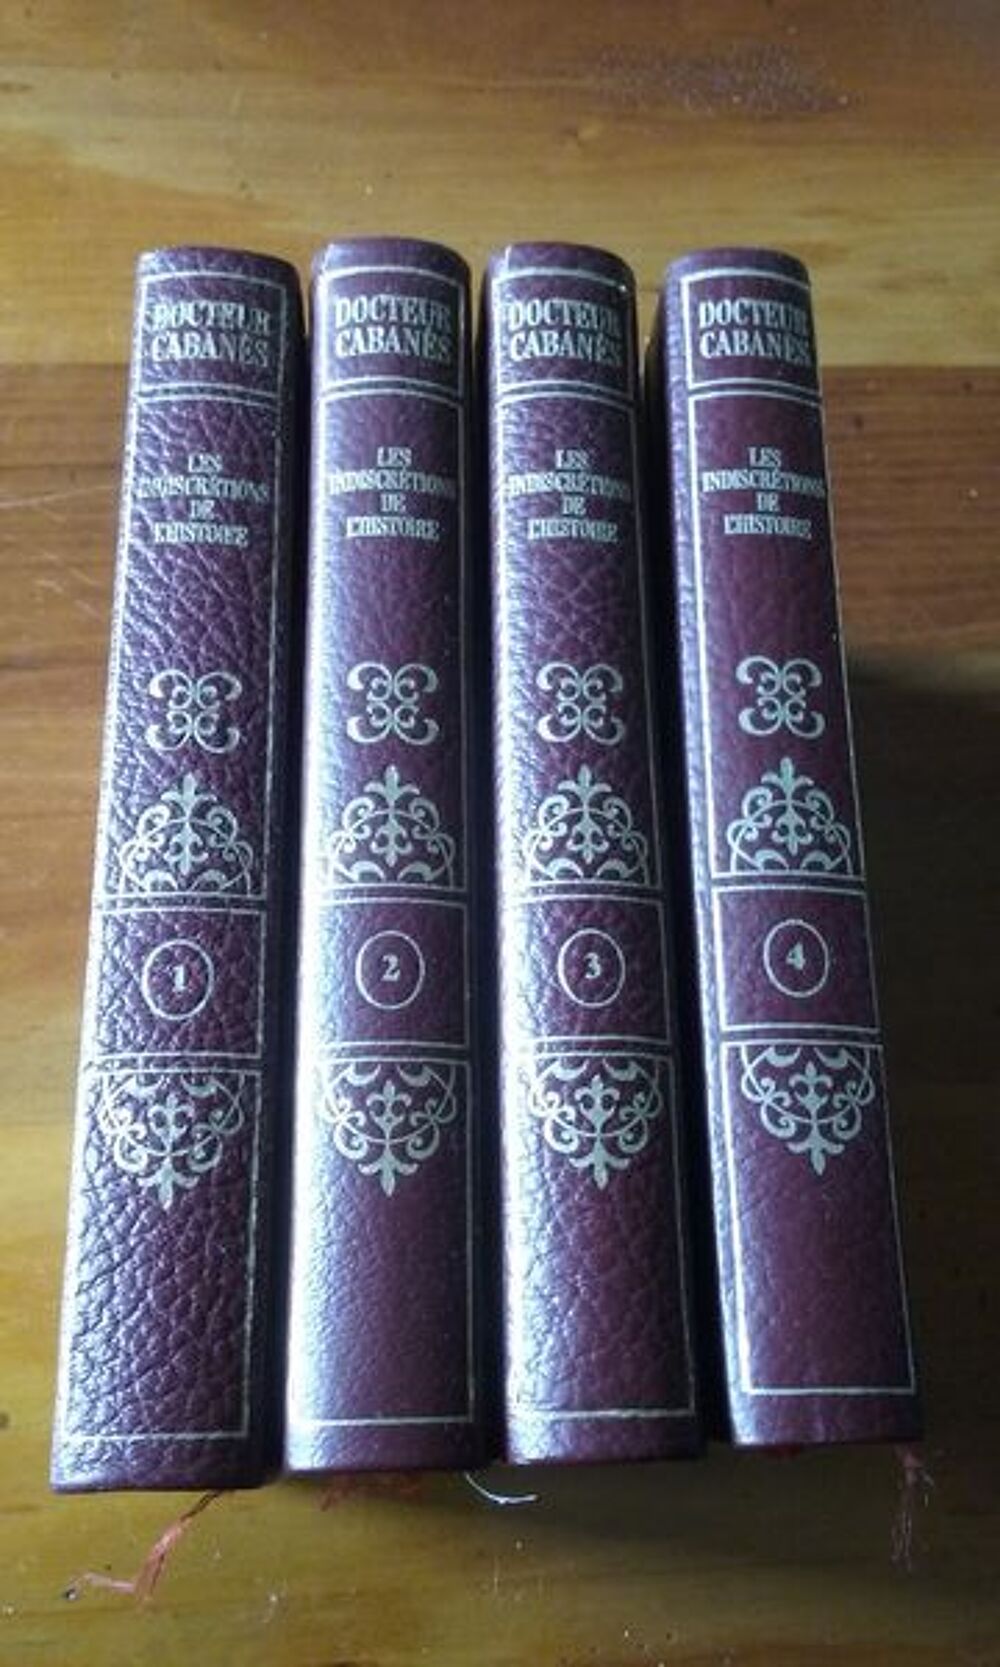 Les indiscr&eacute;tions de l'histoire en 4 volumes Livres et BD